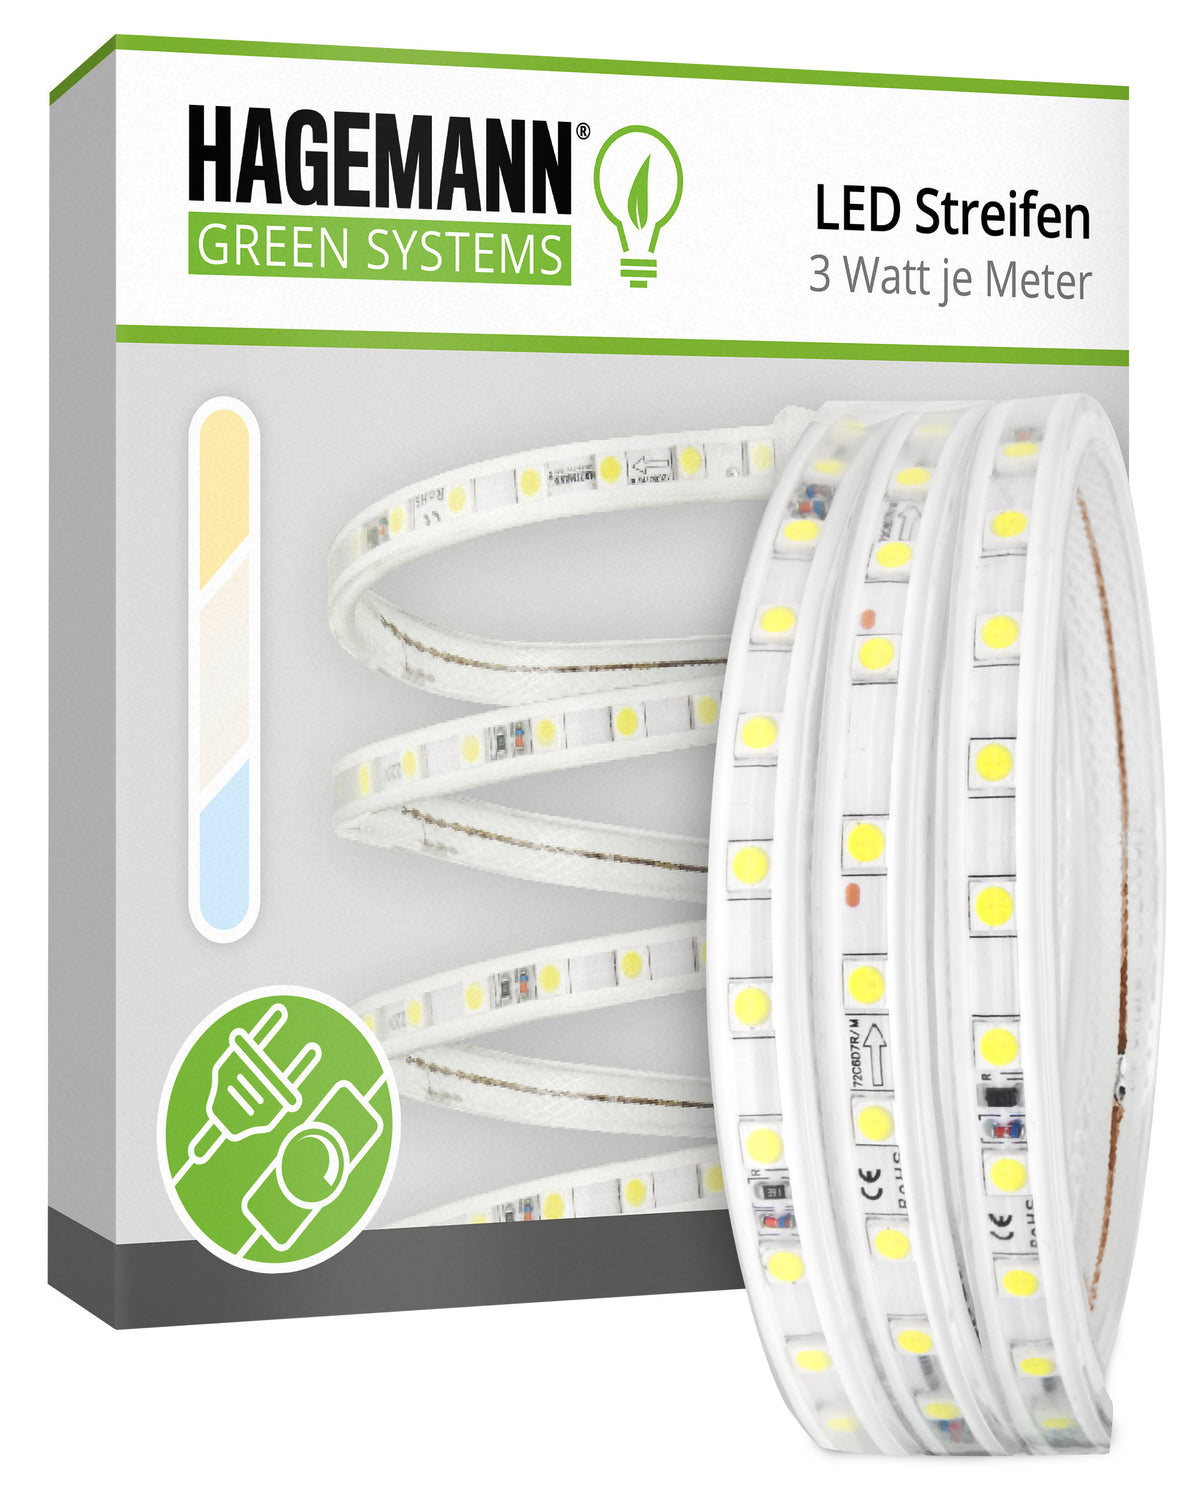 Dimmbare LED Streifen 1-10 m von HAGEMANN® — HAGEMANN - Green Systems®